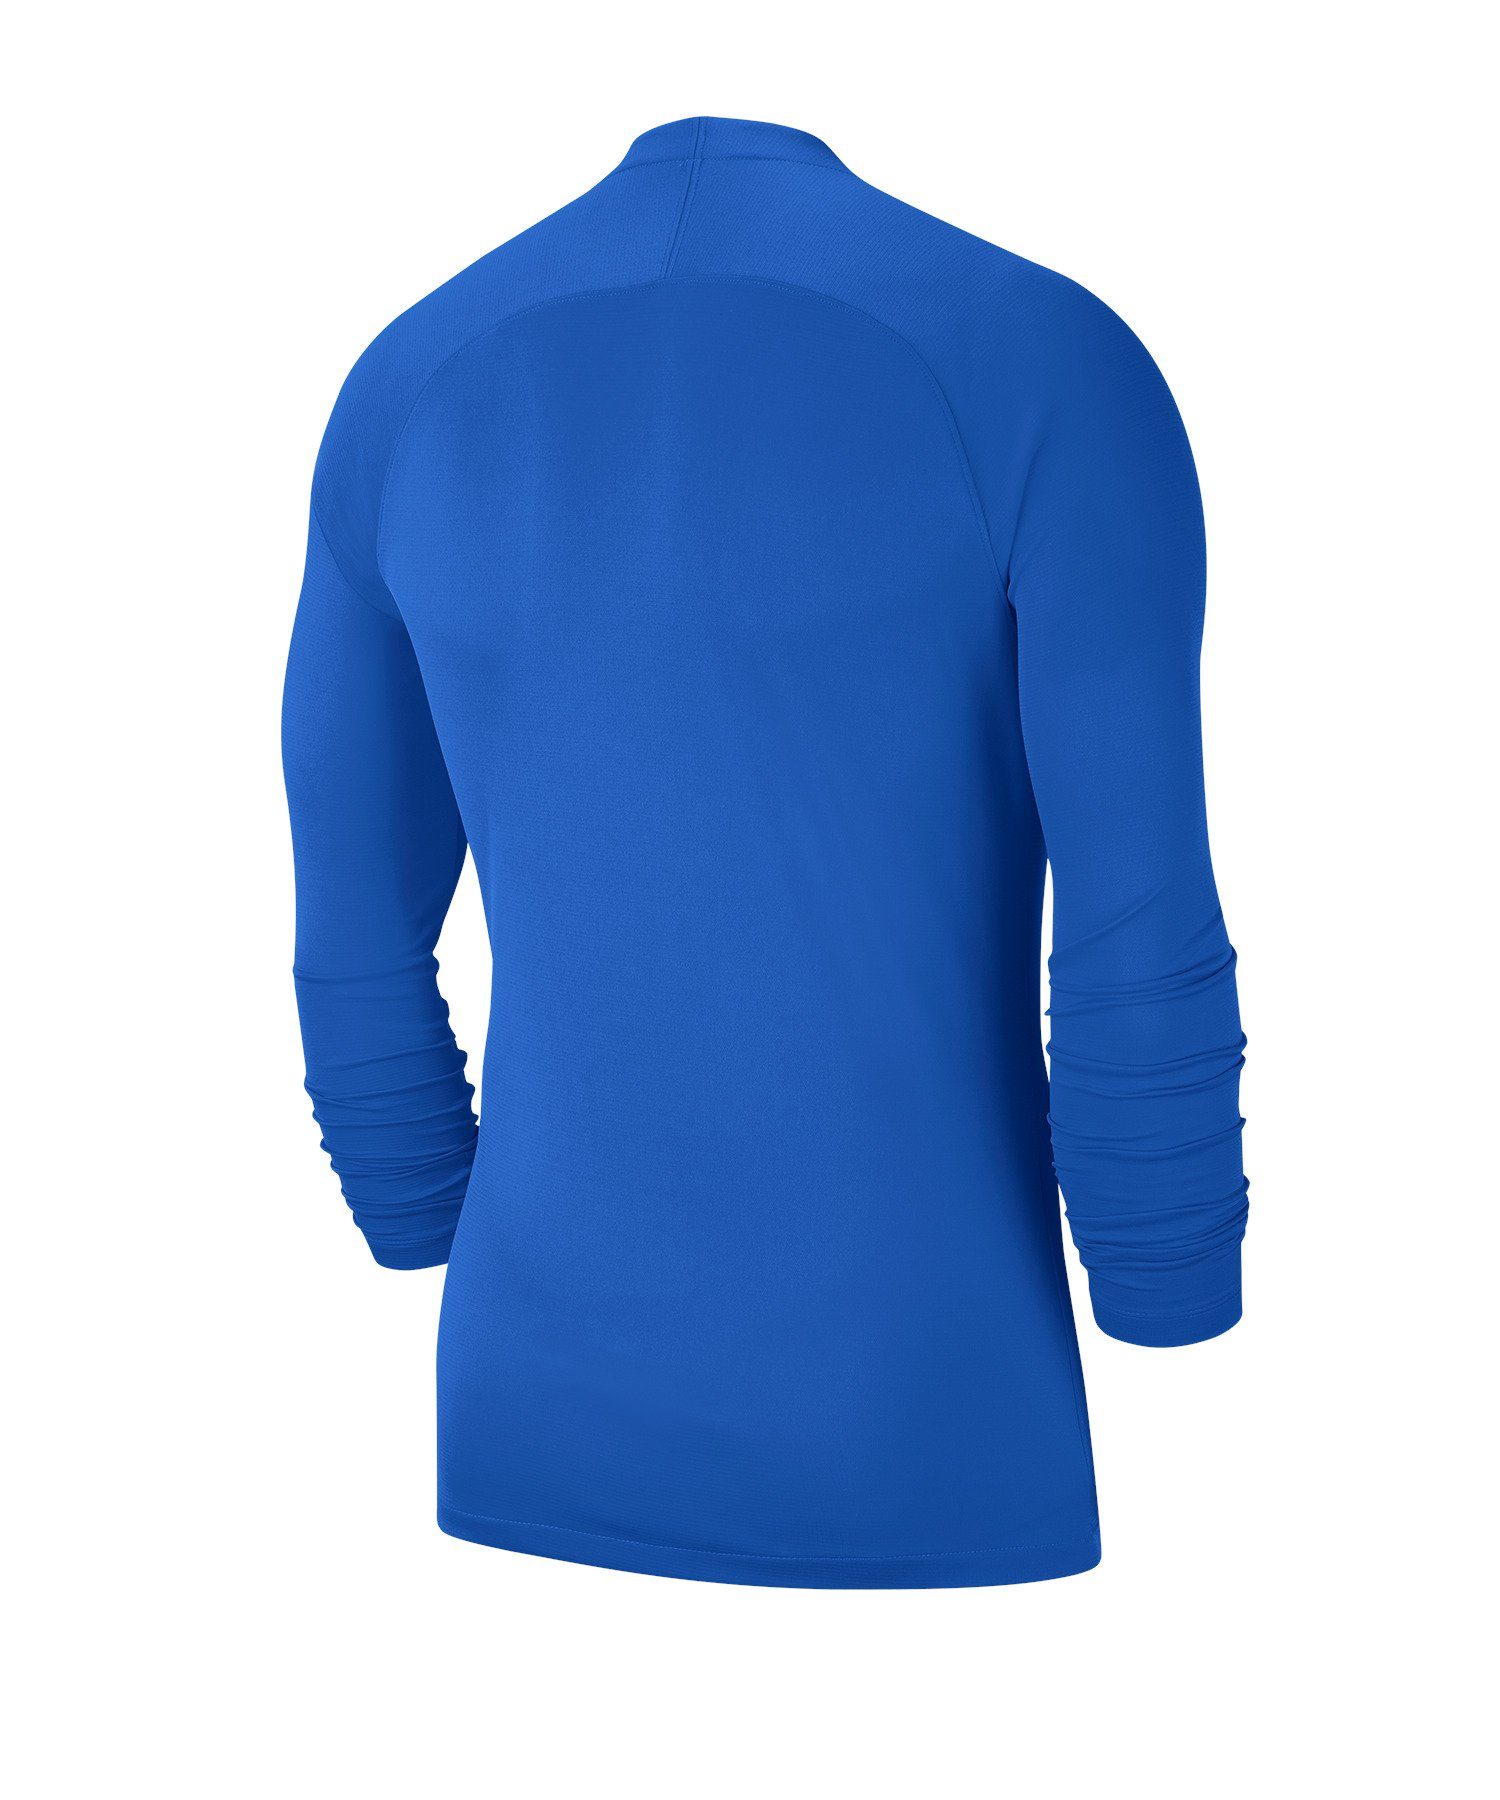 Nike Funktionsshirt Park First Layer Top blauweissblau Kids Daumenöffnung